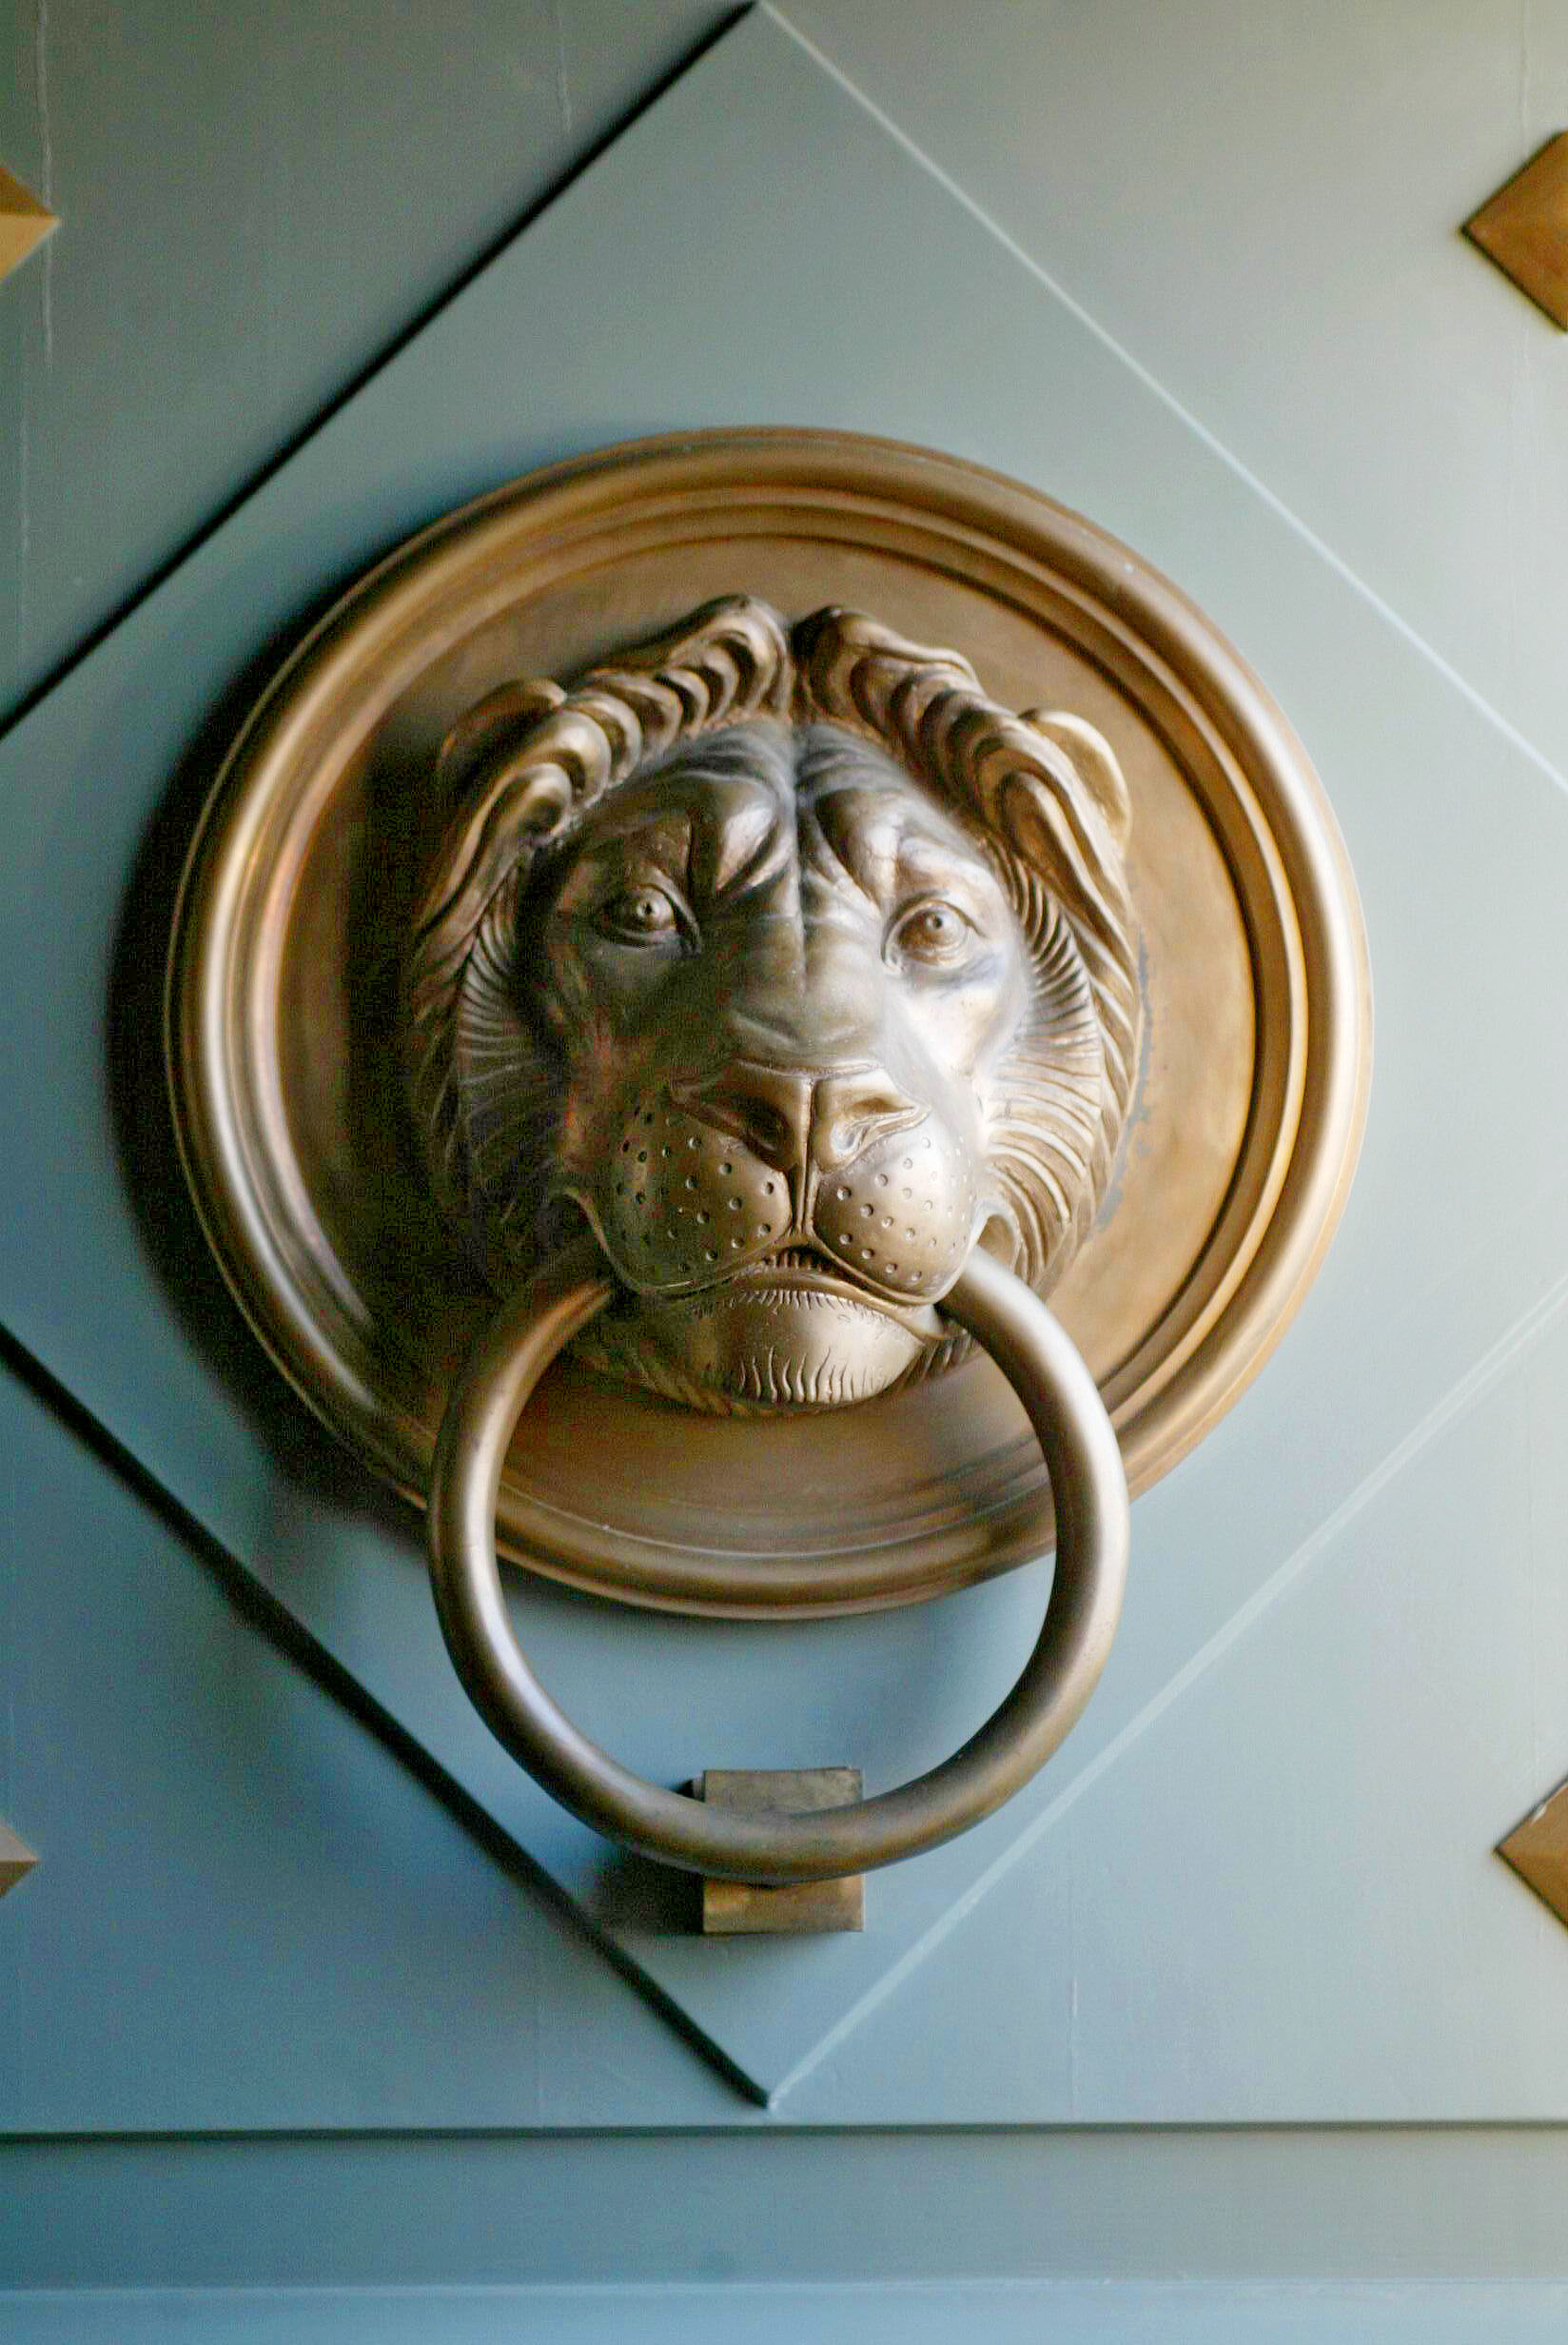 Hallgatag oroszlán a köztársasági elnöki palota ajtaján